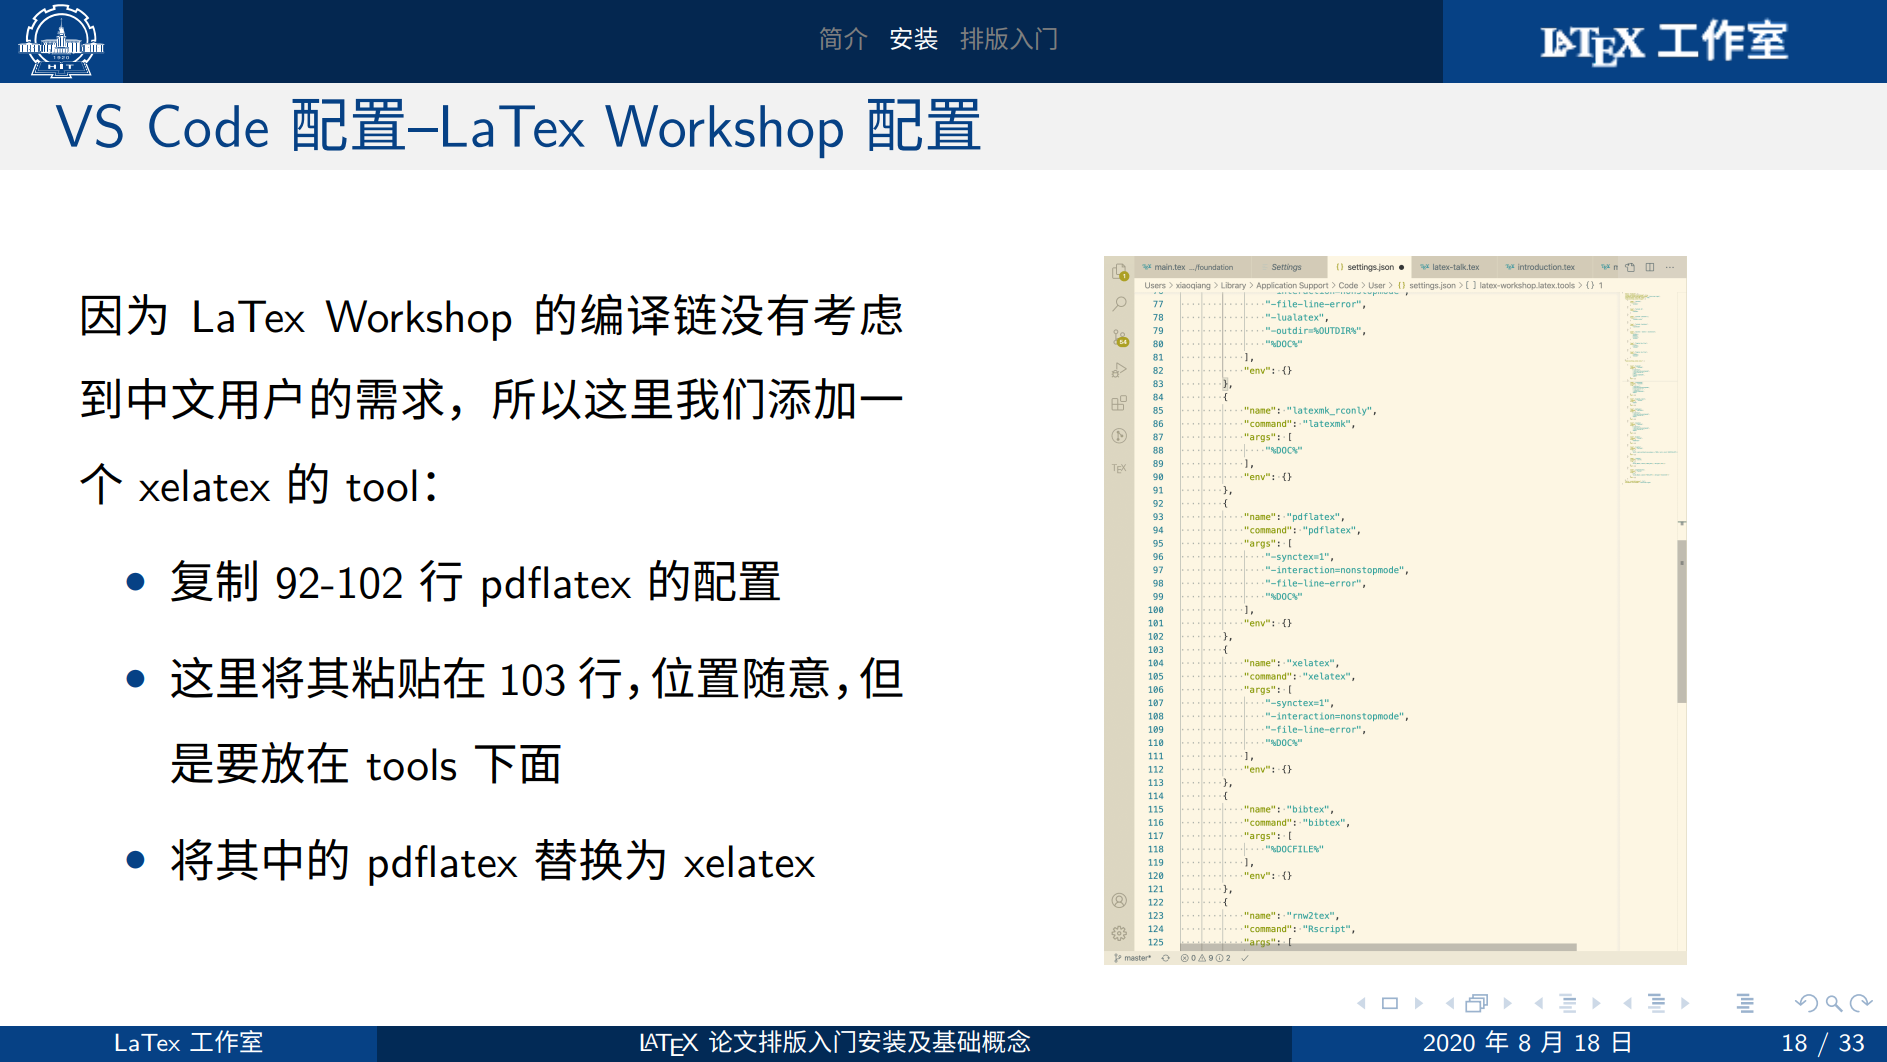 LaTeX 安装指南与基础介绍 - LaTeX 直播附带资料